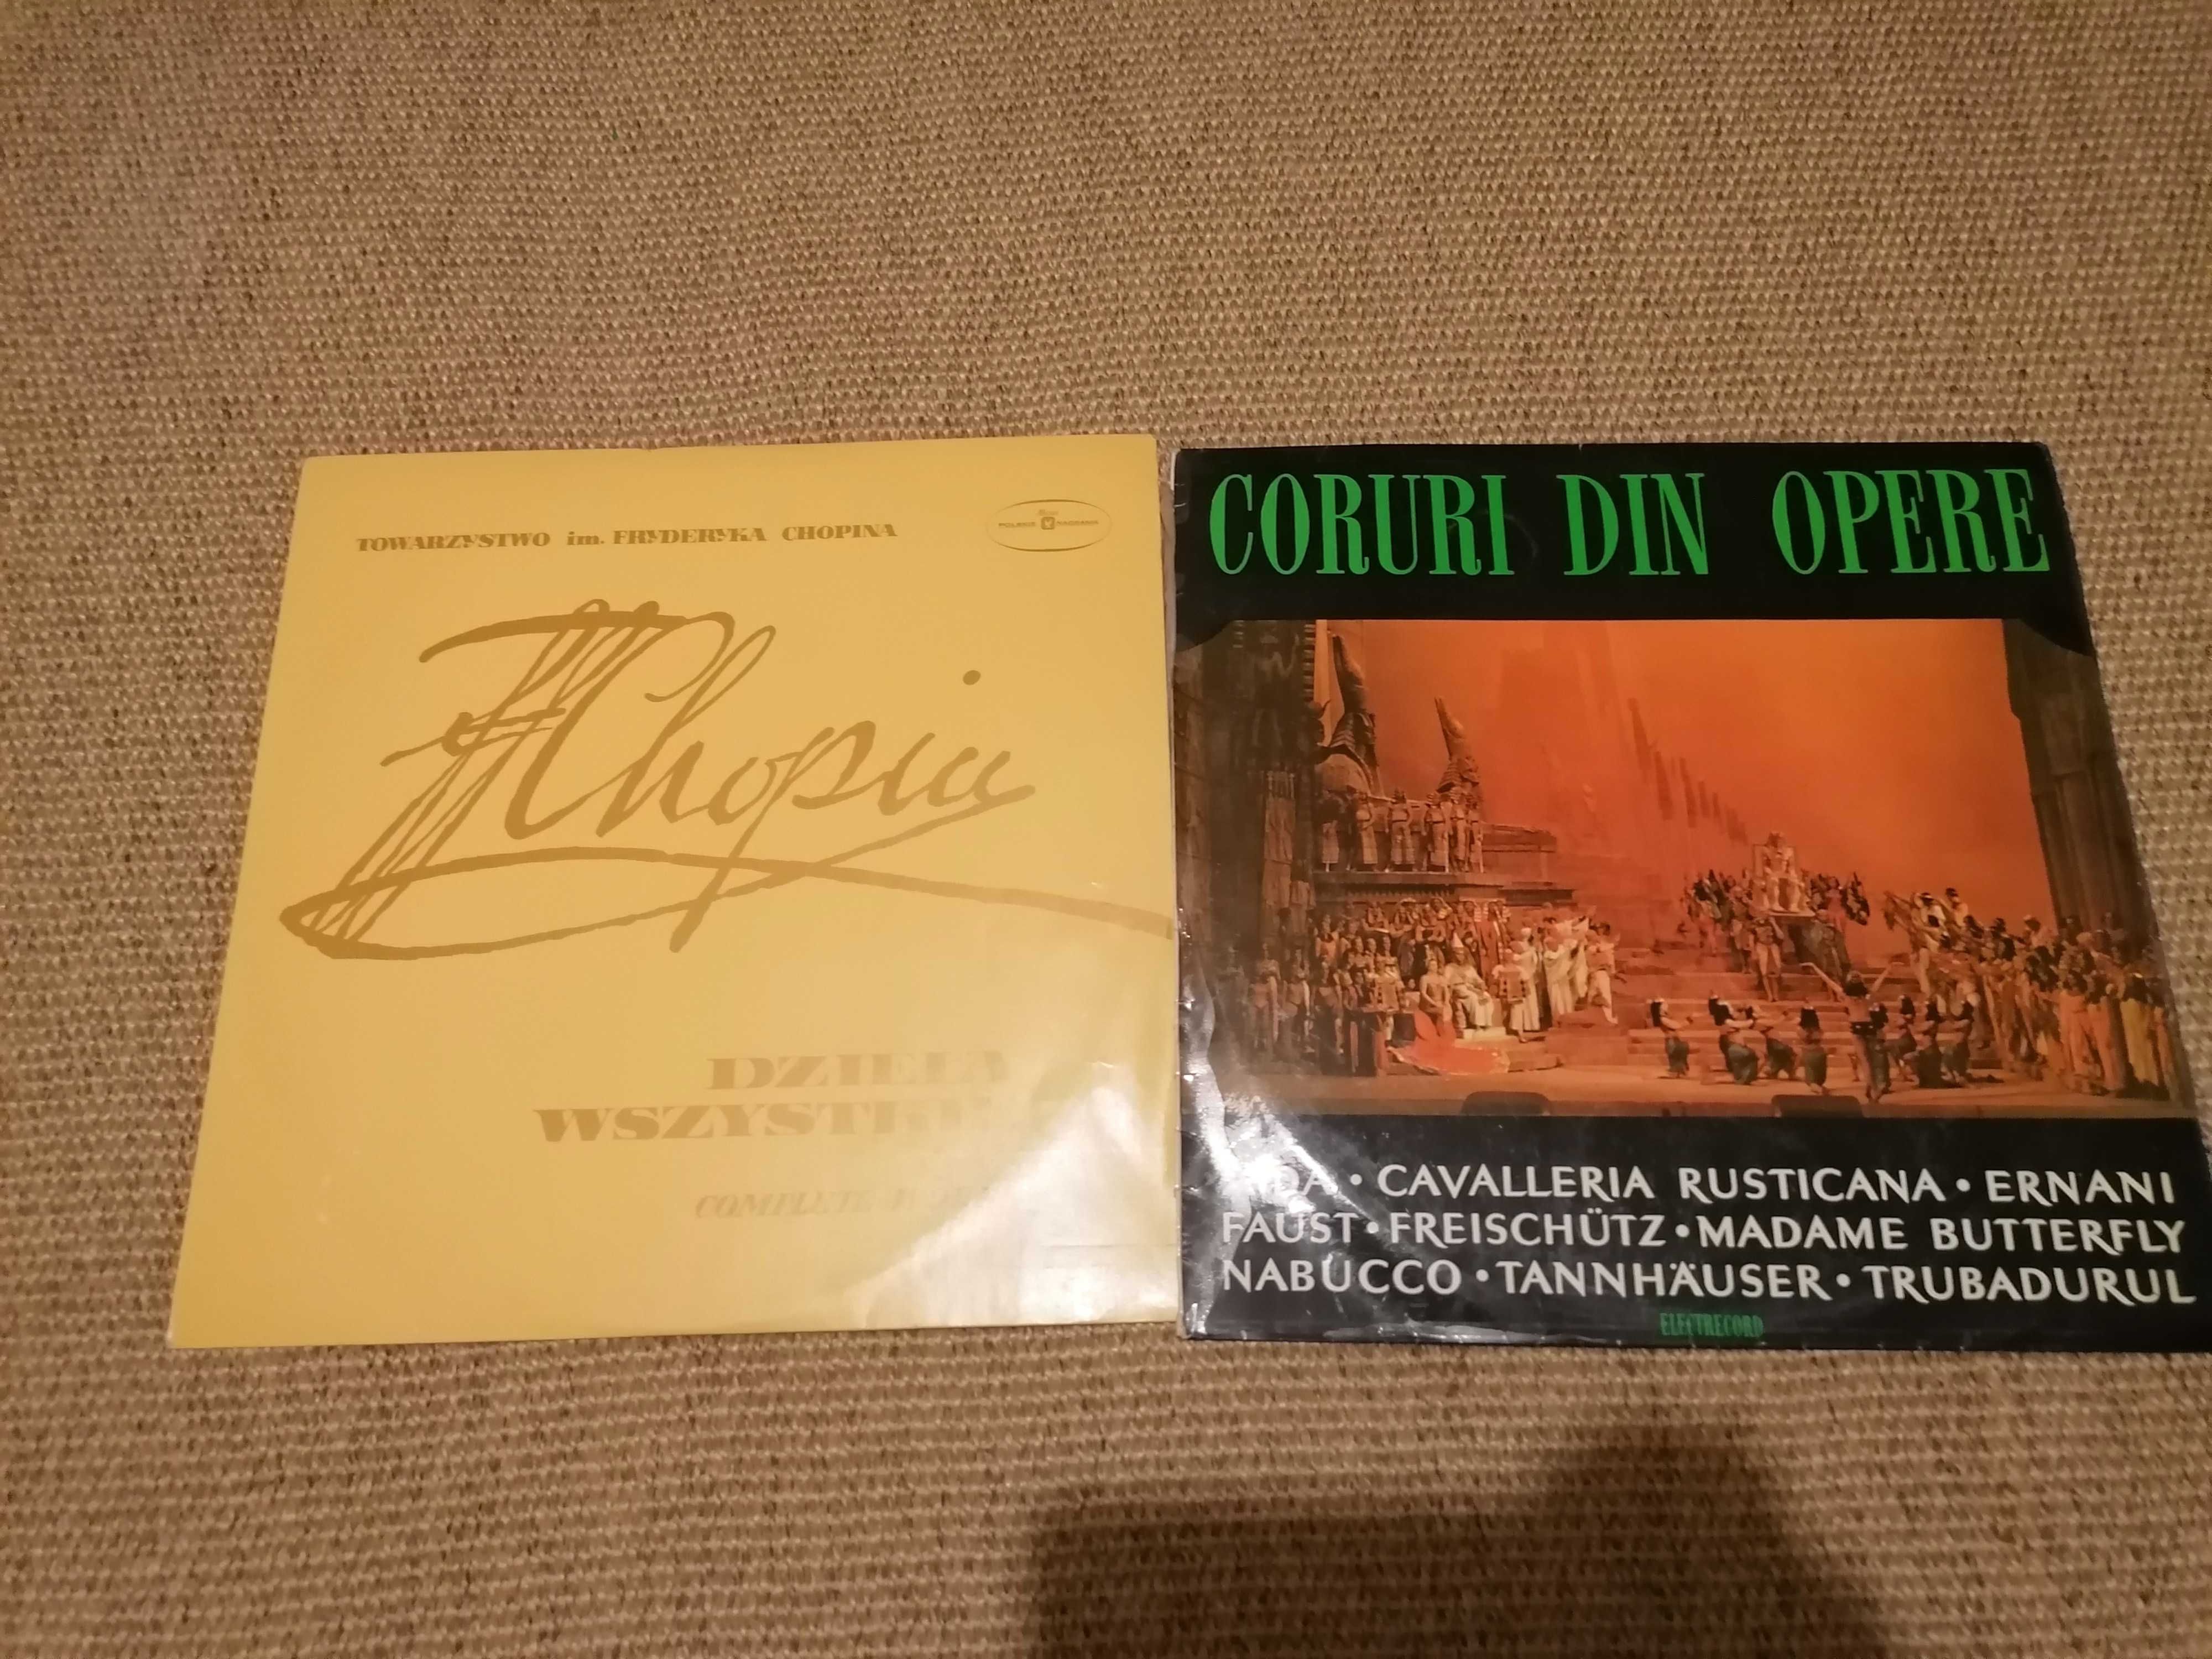 VINIL Chopin Dzieła Wszystkie 1960 / Coruri din opere Aida Electrecord